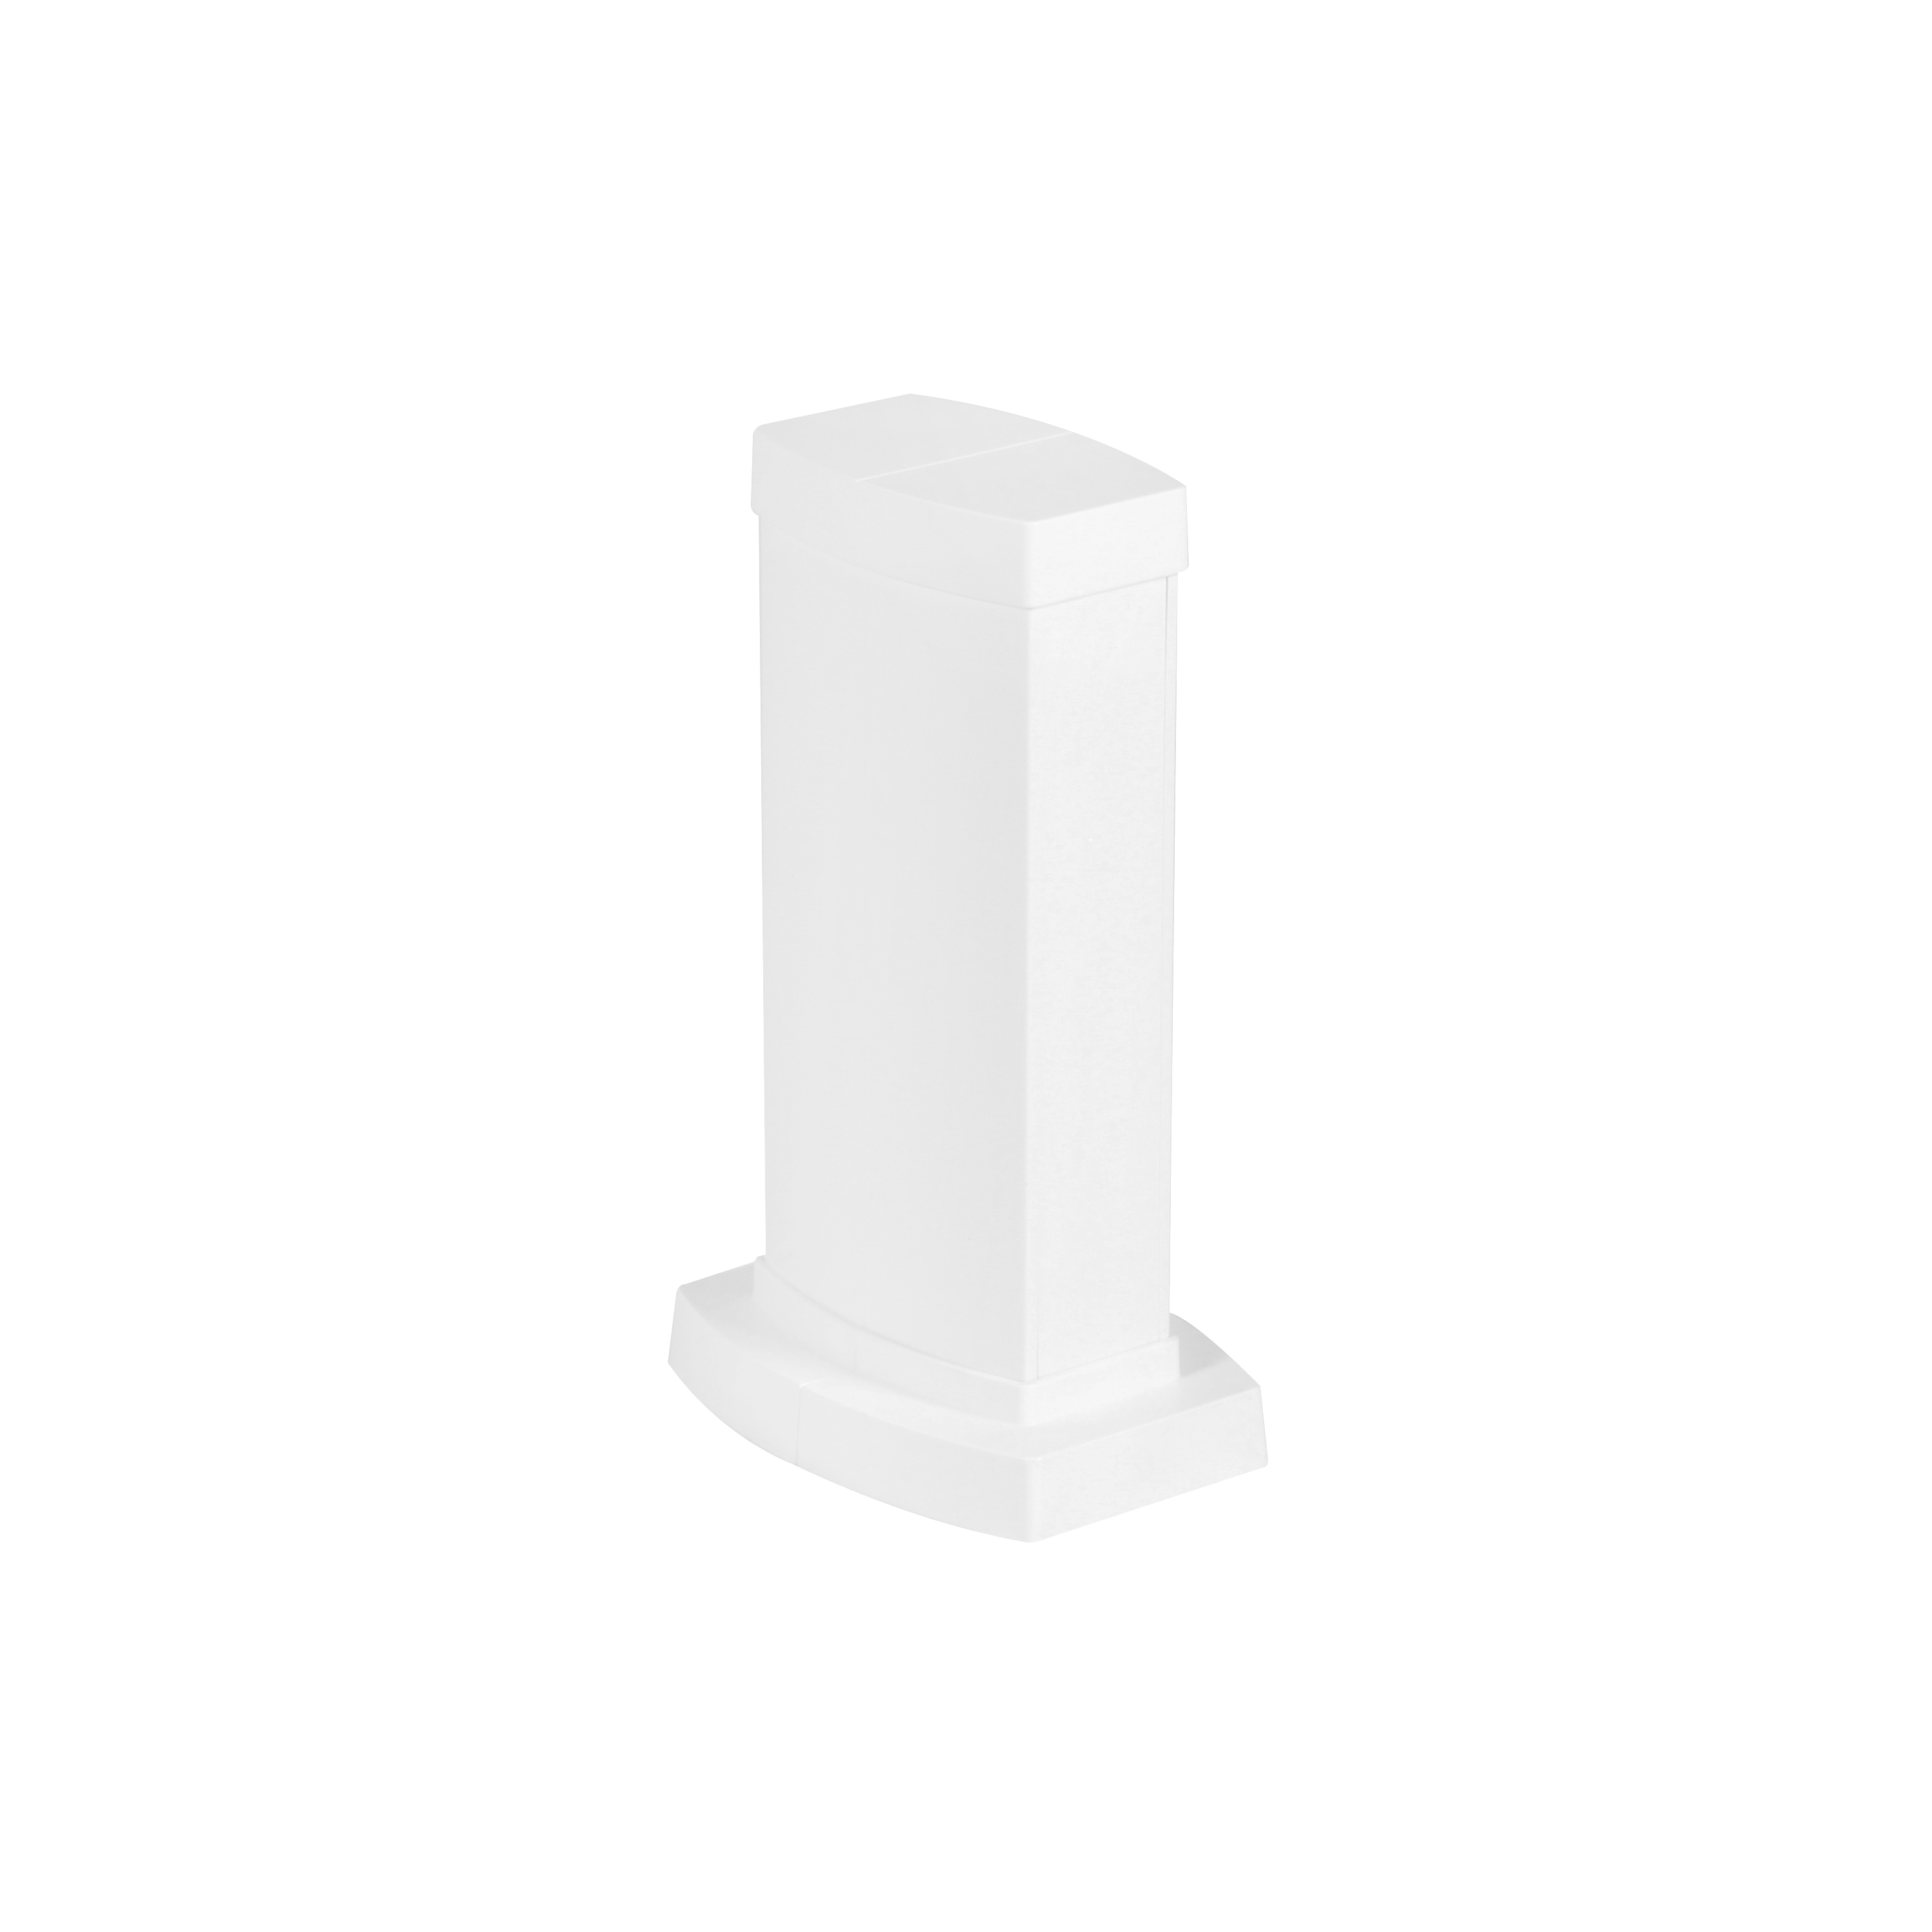 Snap-On мини-колонна пластиковая с крышкой из пластика 2 секции, высота 0,3 метра, цвет белый 653020 Legrand